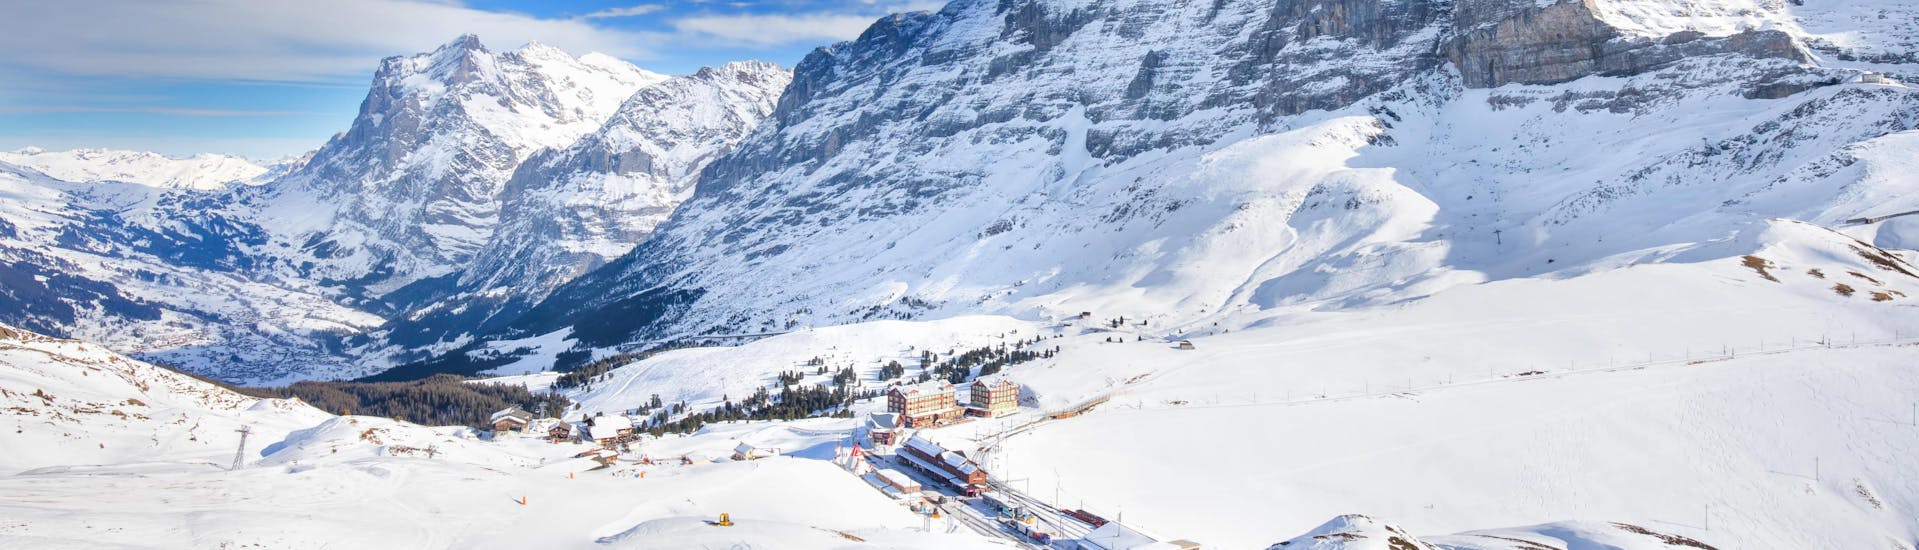 Blick auf die verschneiten Pisten von Wengen in der Jungfrauregion, wo viele Skischulen ihre Skikurse anbieten.